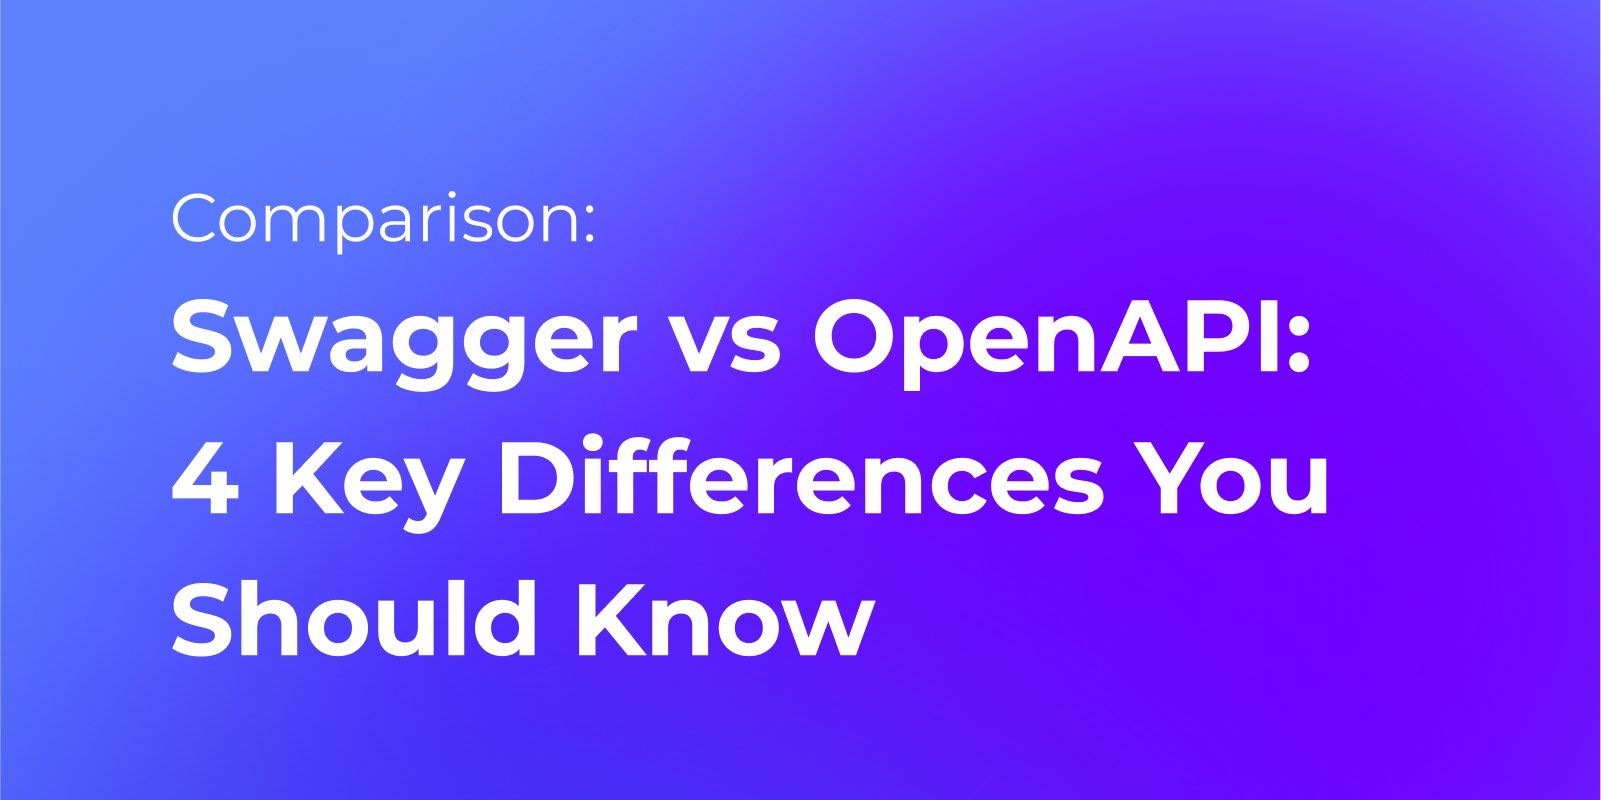 Swagger vs. OpenAI